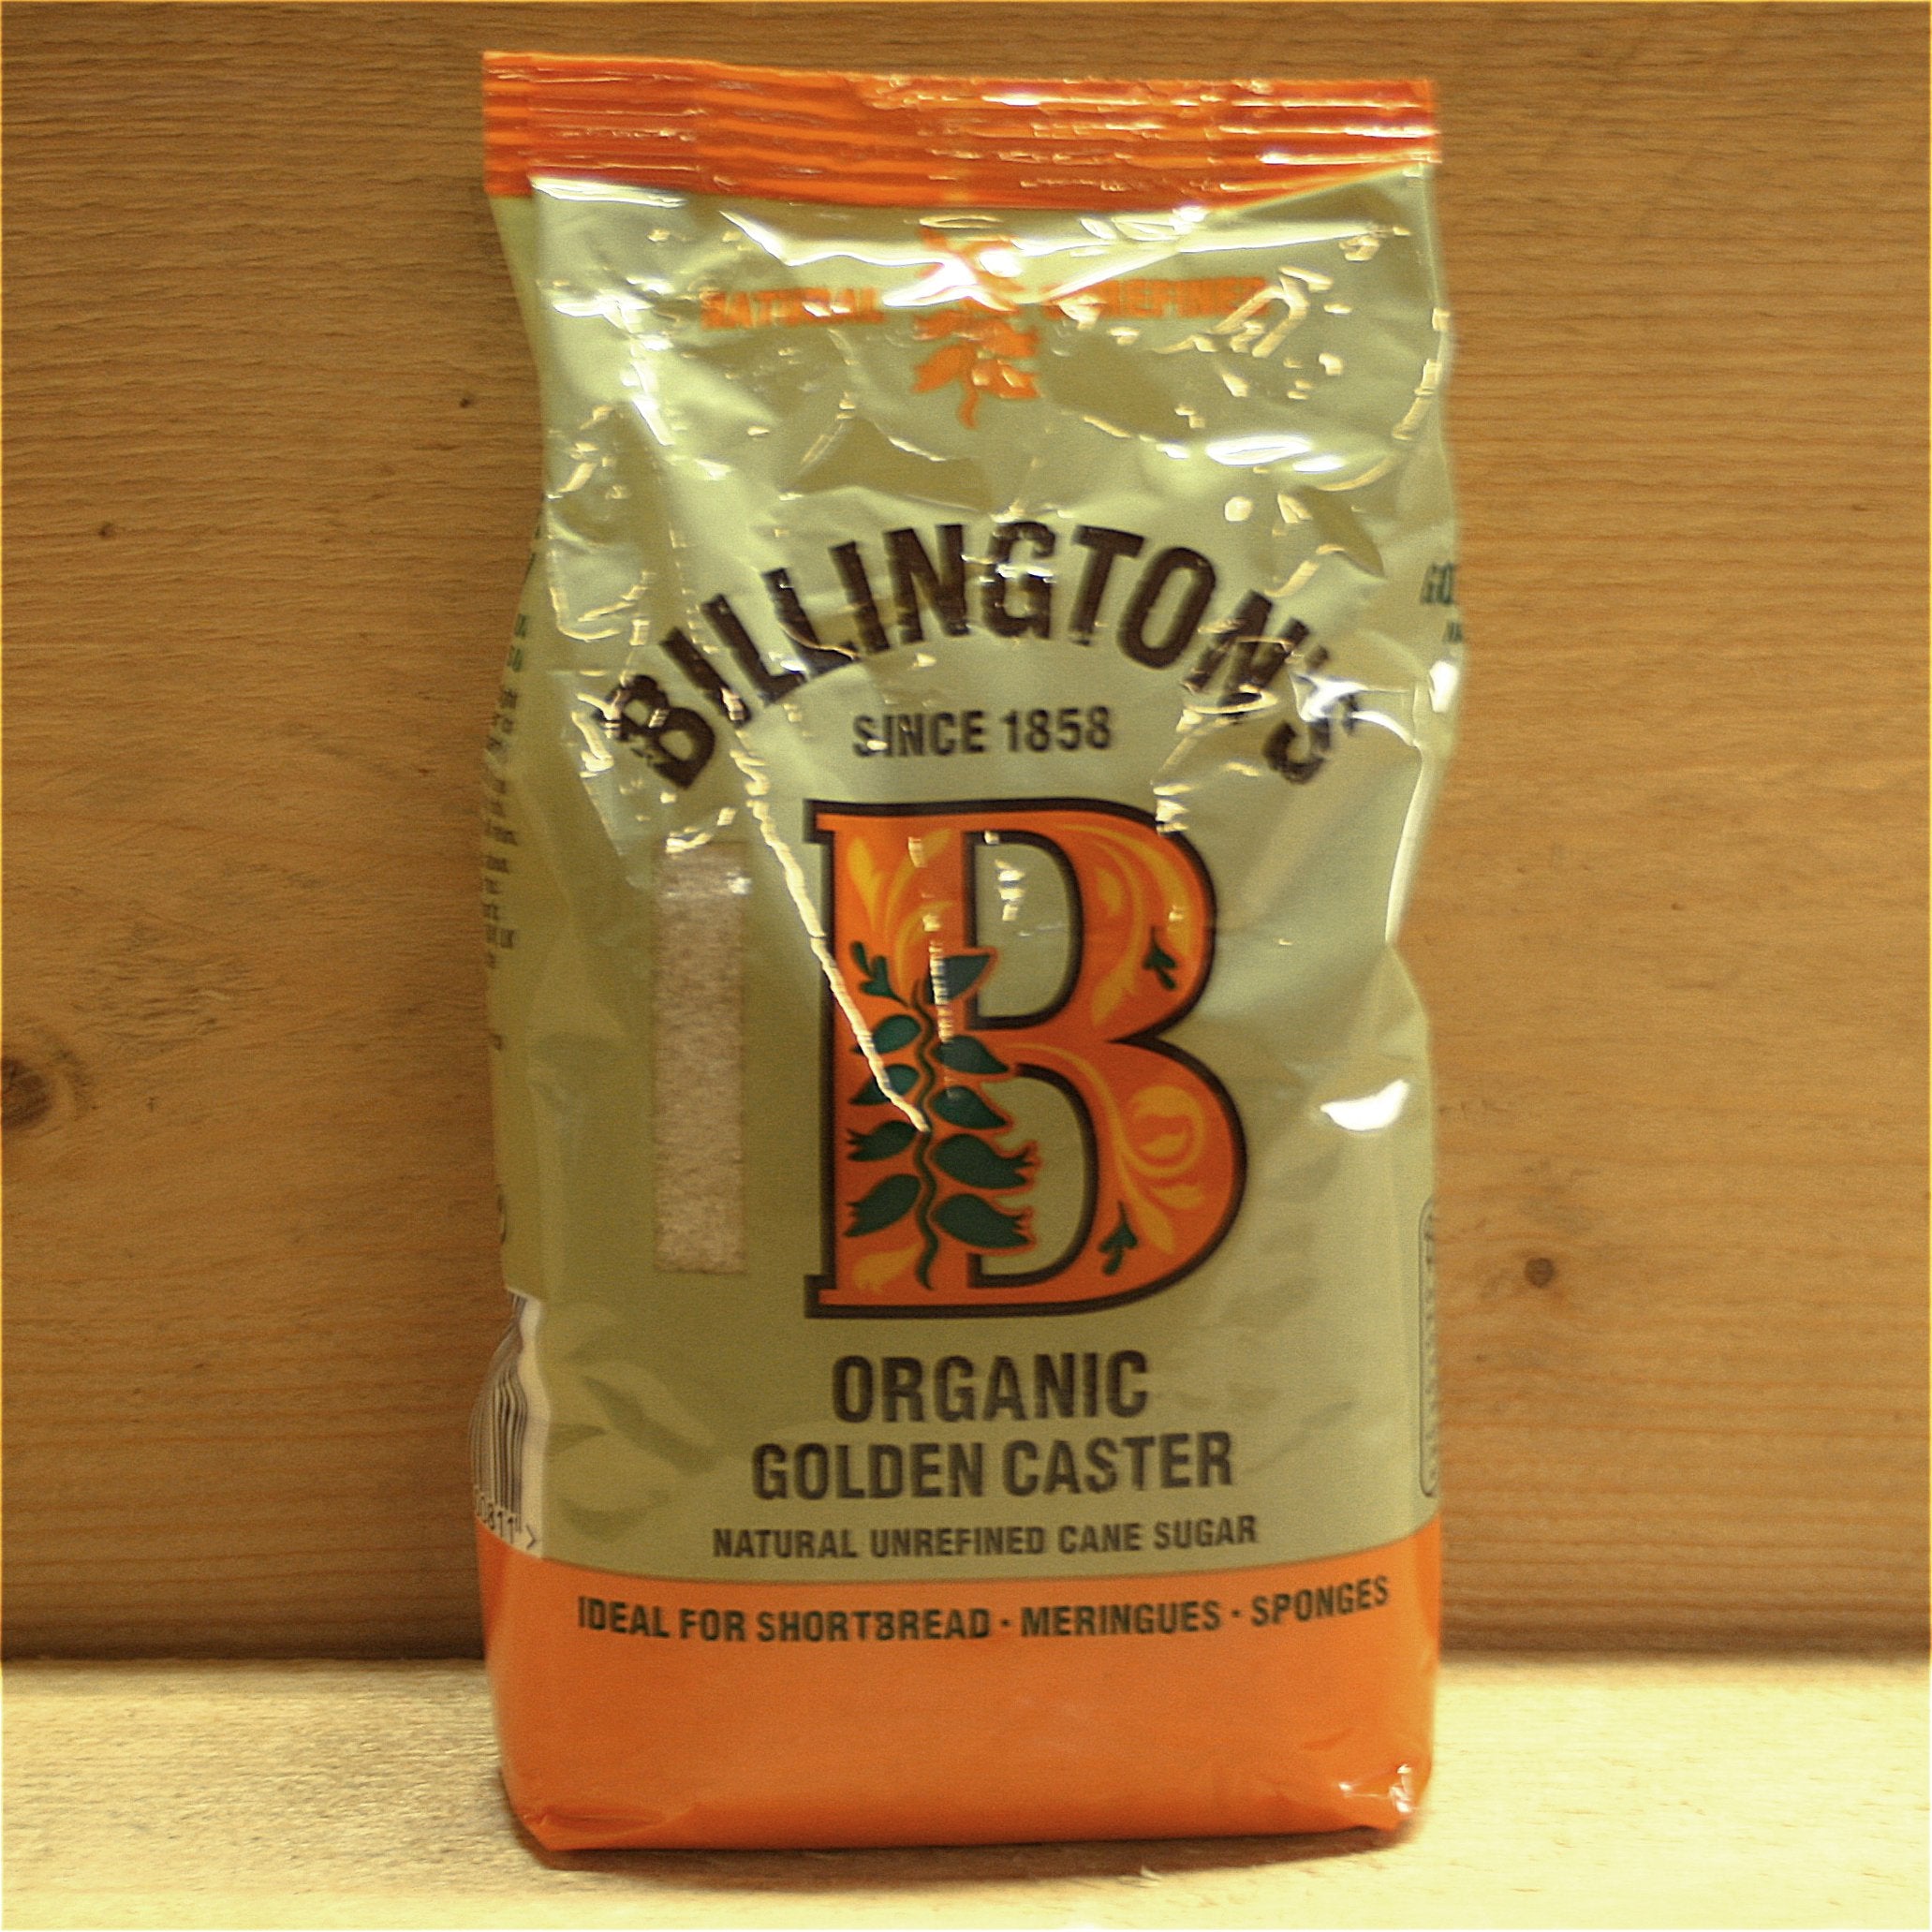 billingtons caster sugar 500g